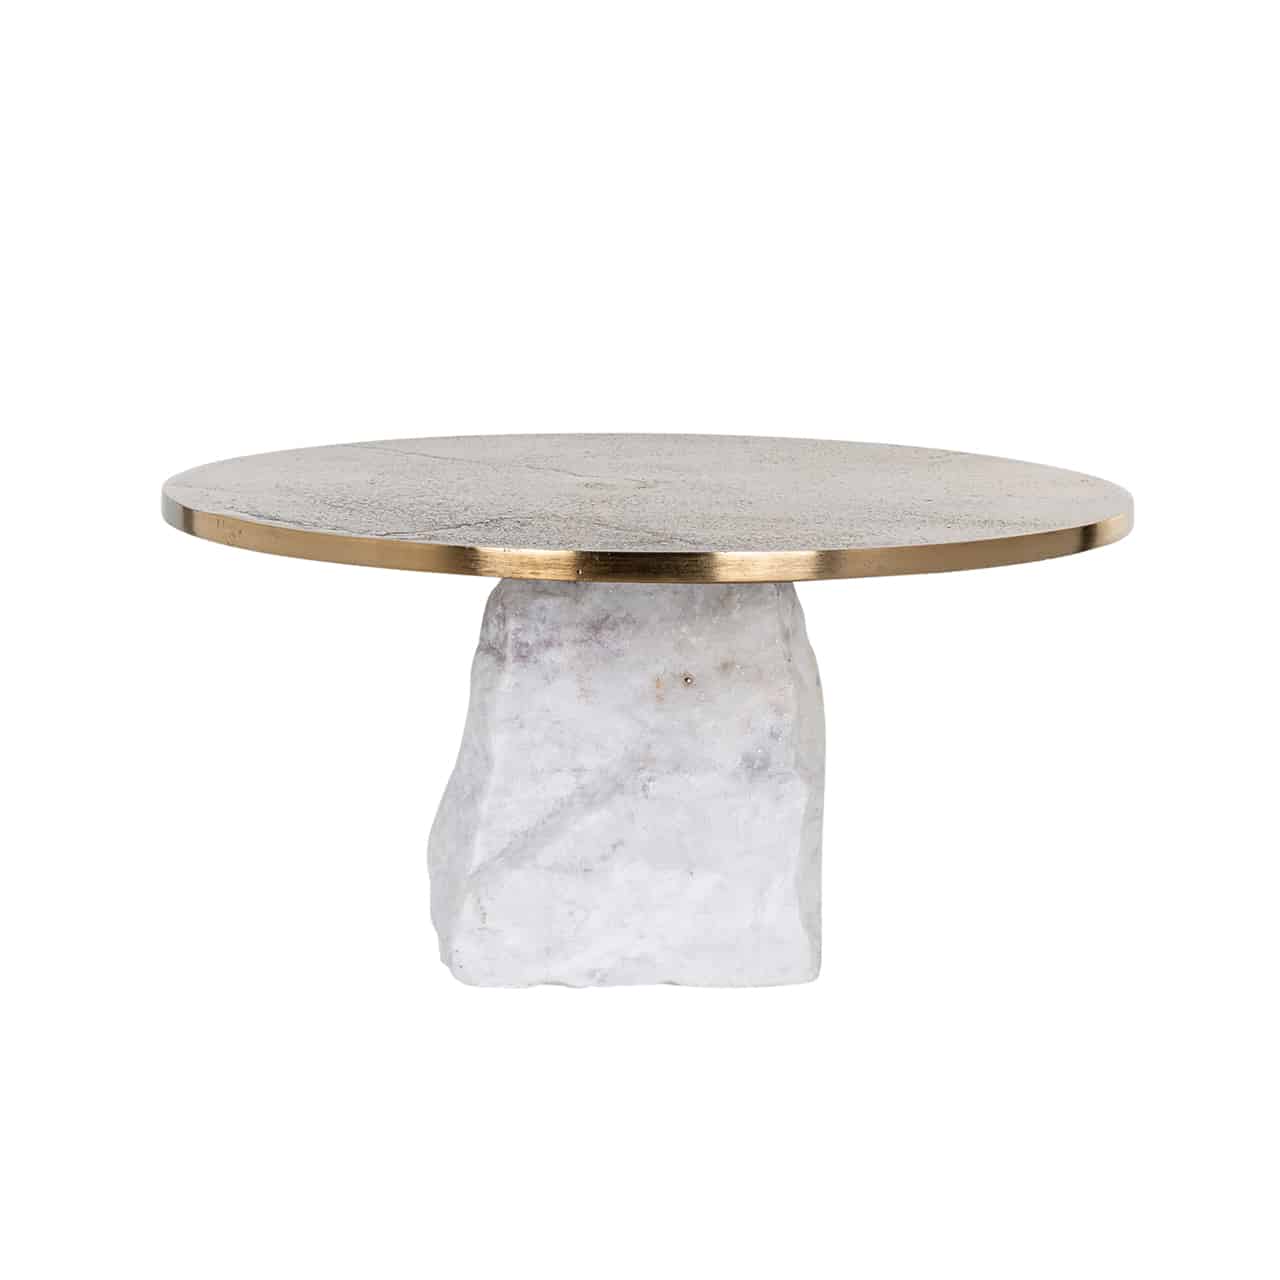 Kuchenplatte/Kerzenständer Celile von Richmond; auf einem rechteckigen, aufrecht stehenden Marmorblock ist eine hellbraune, marmorierte Platte mit Goldrand angebracht.